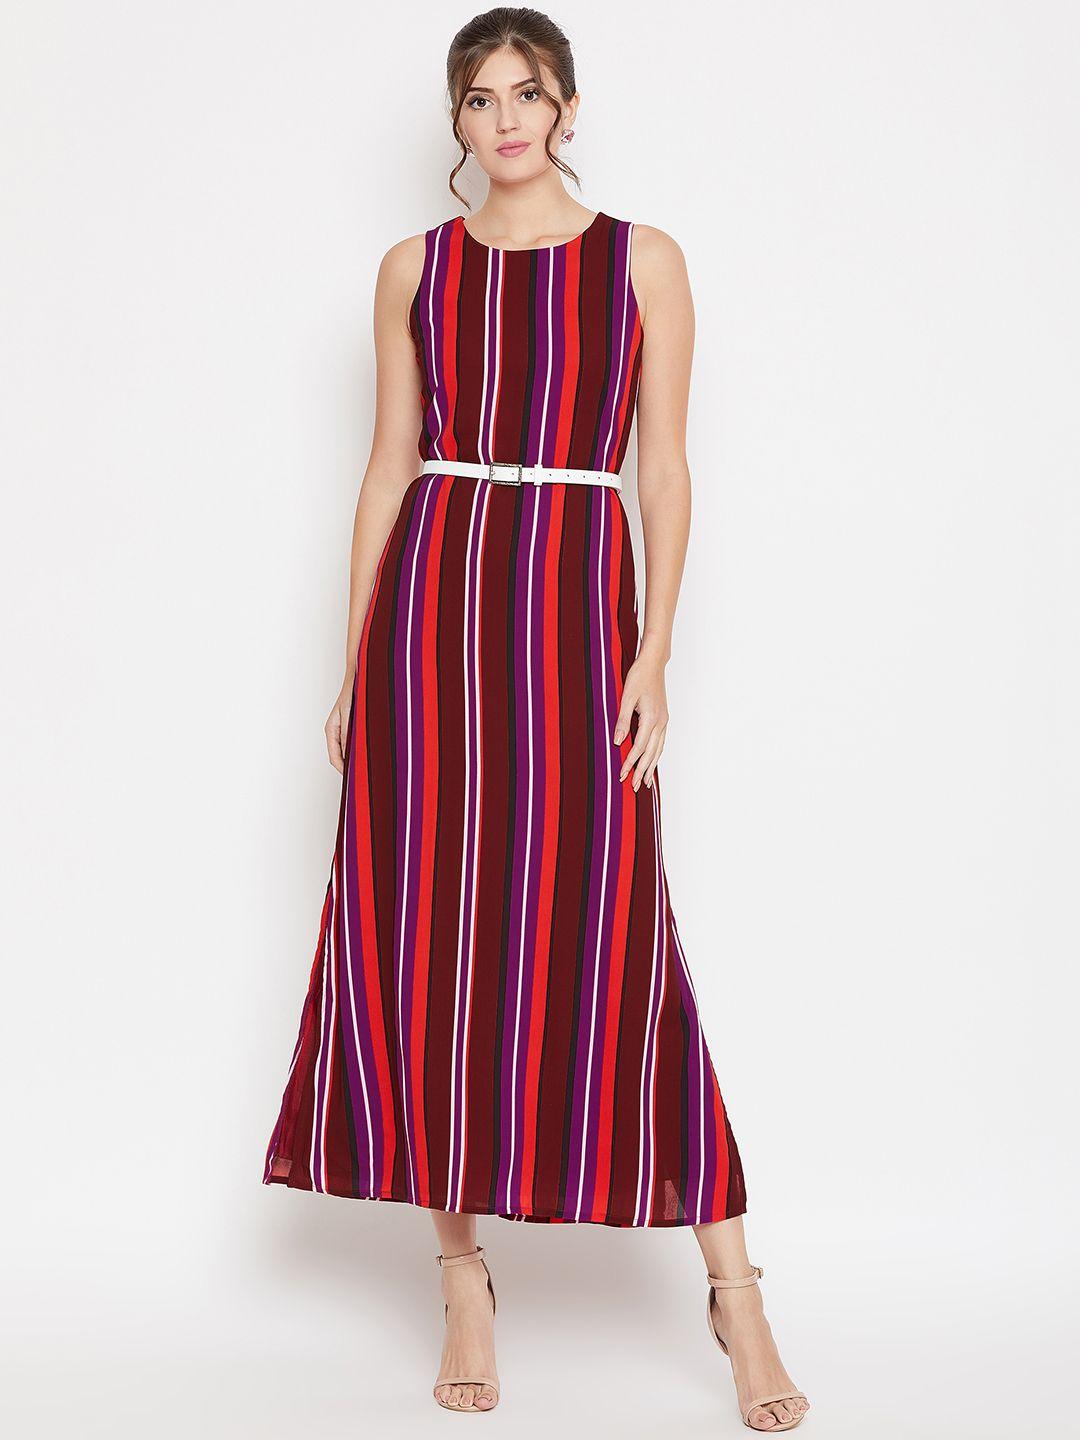 purys-women-maroon-striped-maxi-dress